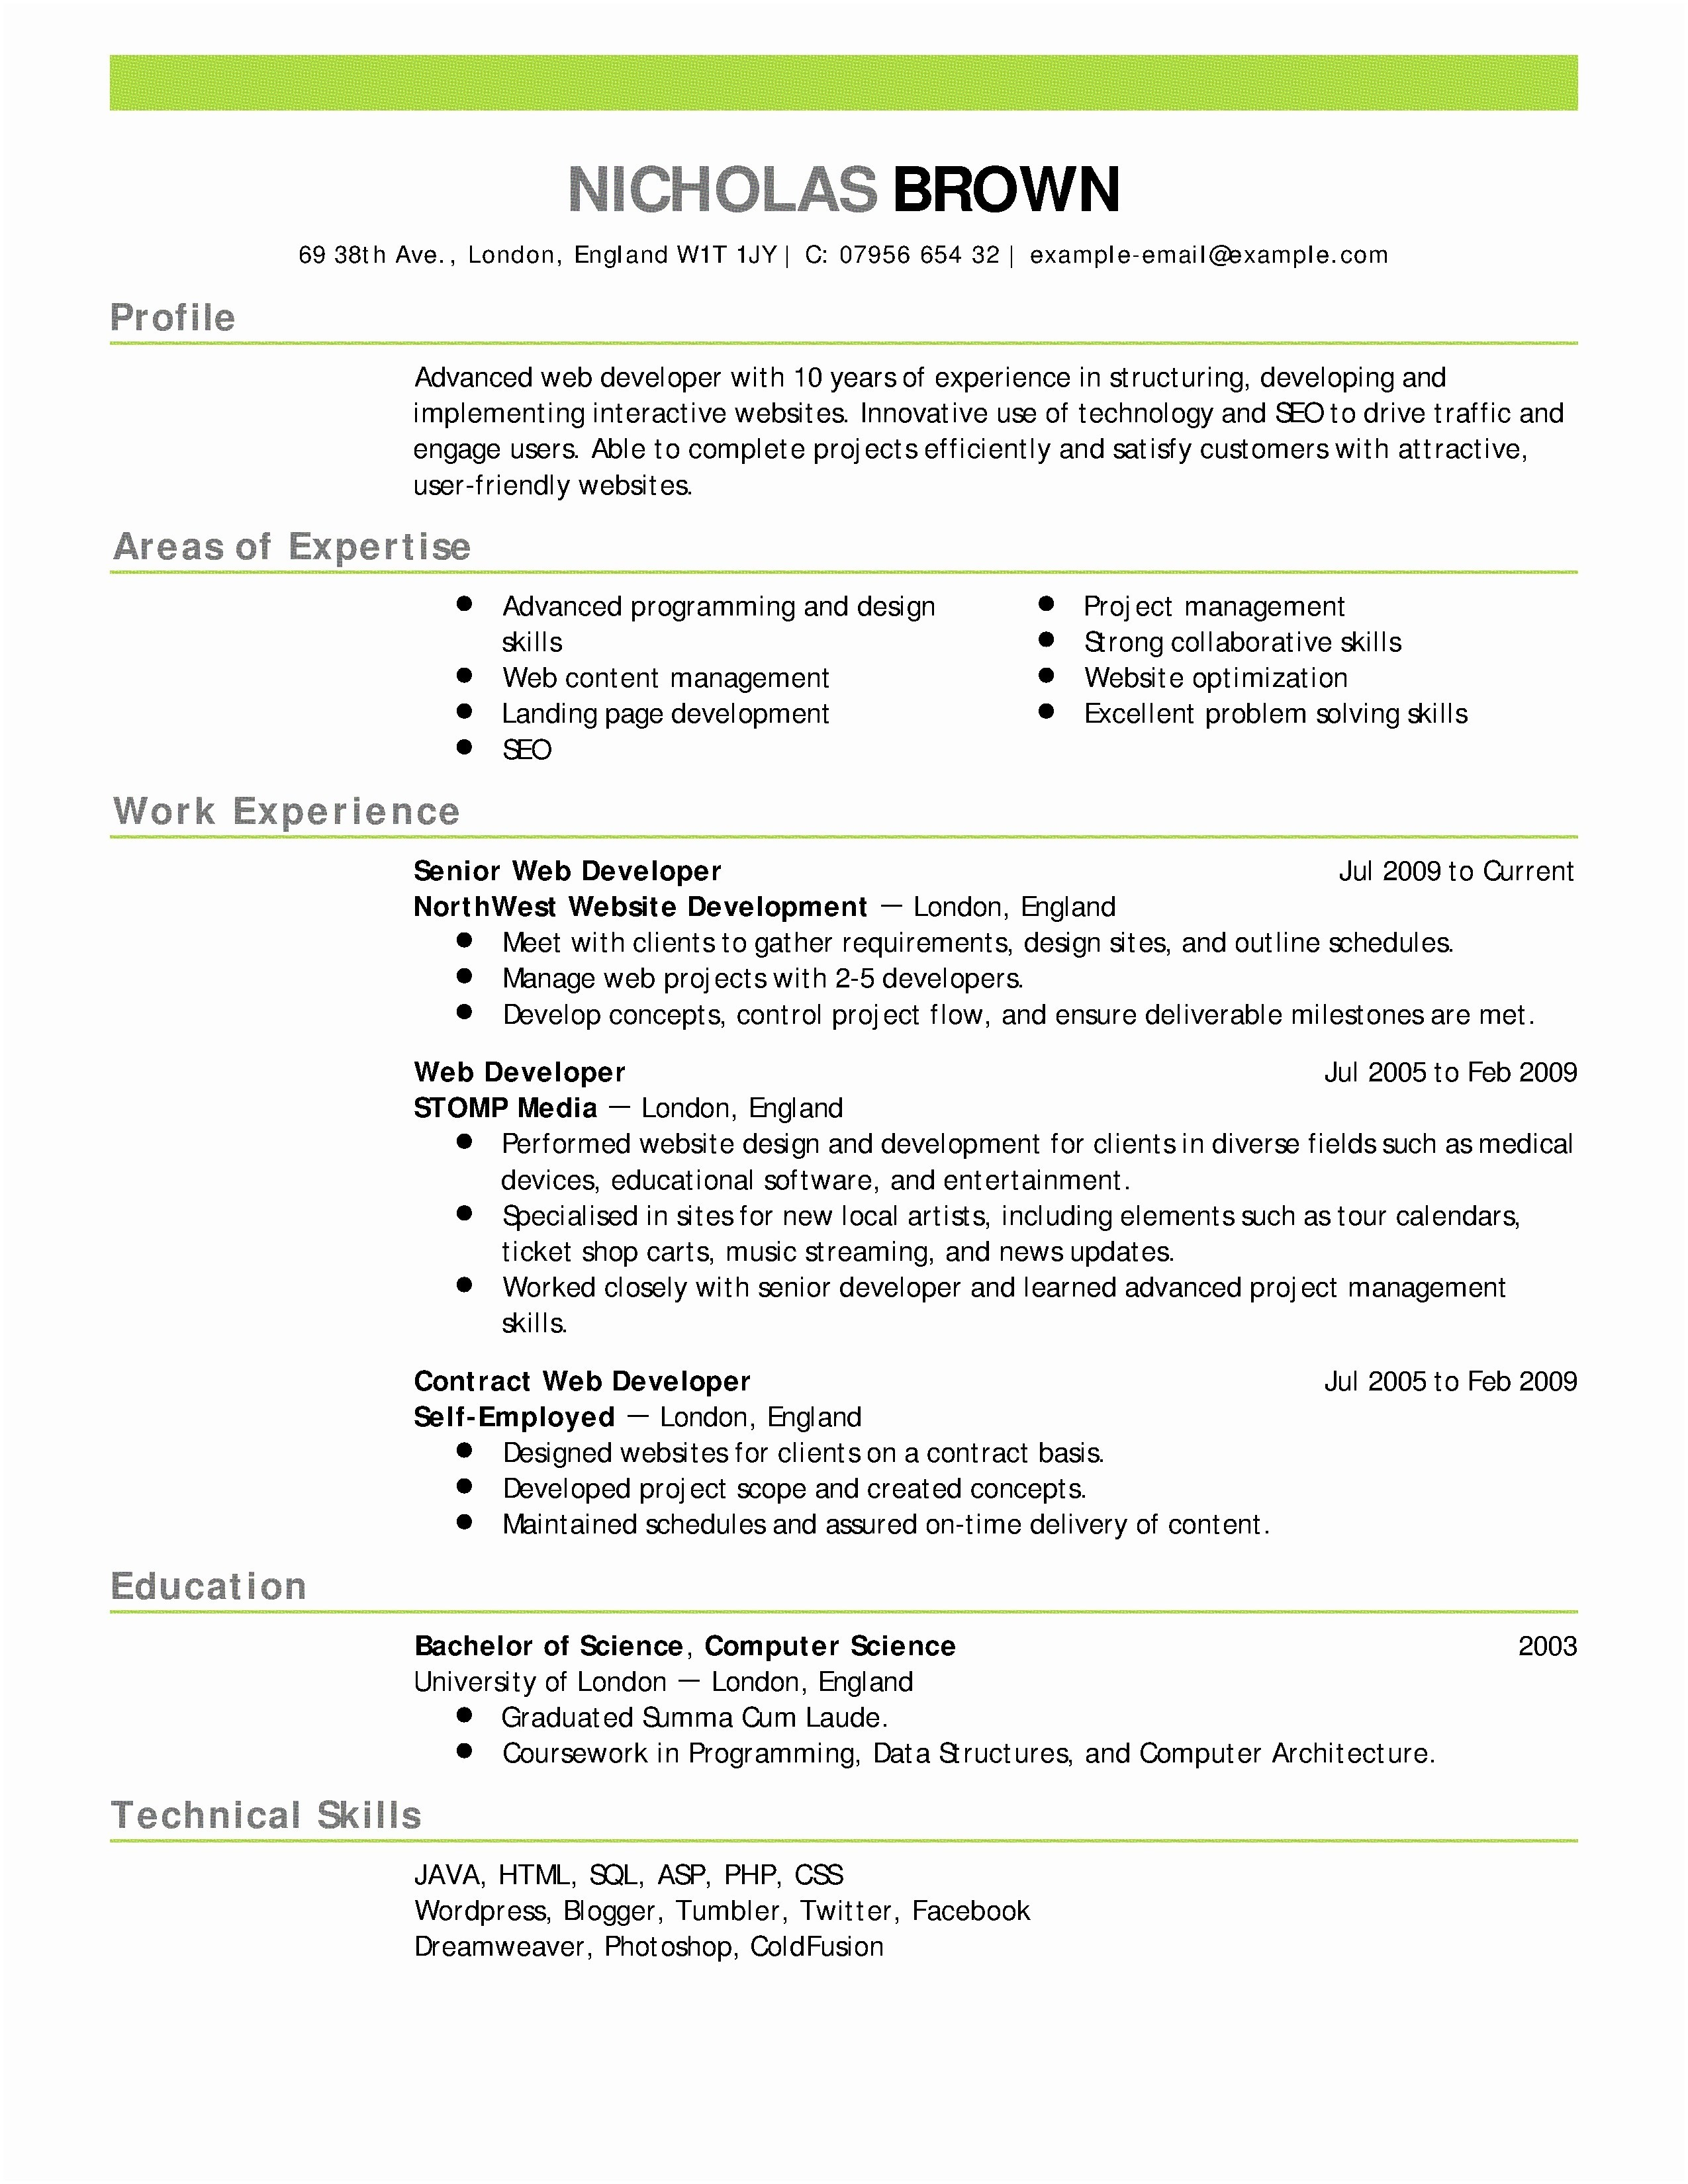 Nursing Cover Letter Template - Sample Cover Letter for Rn Job Application New Nursing Resume